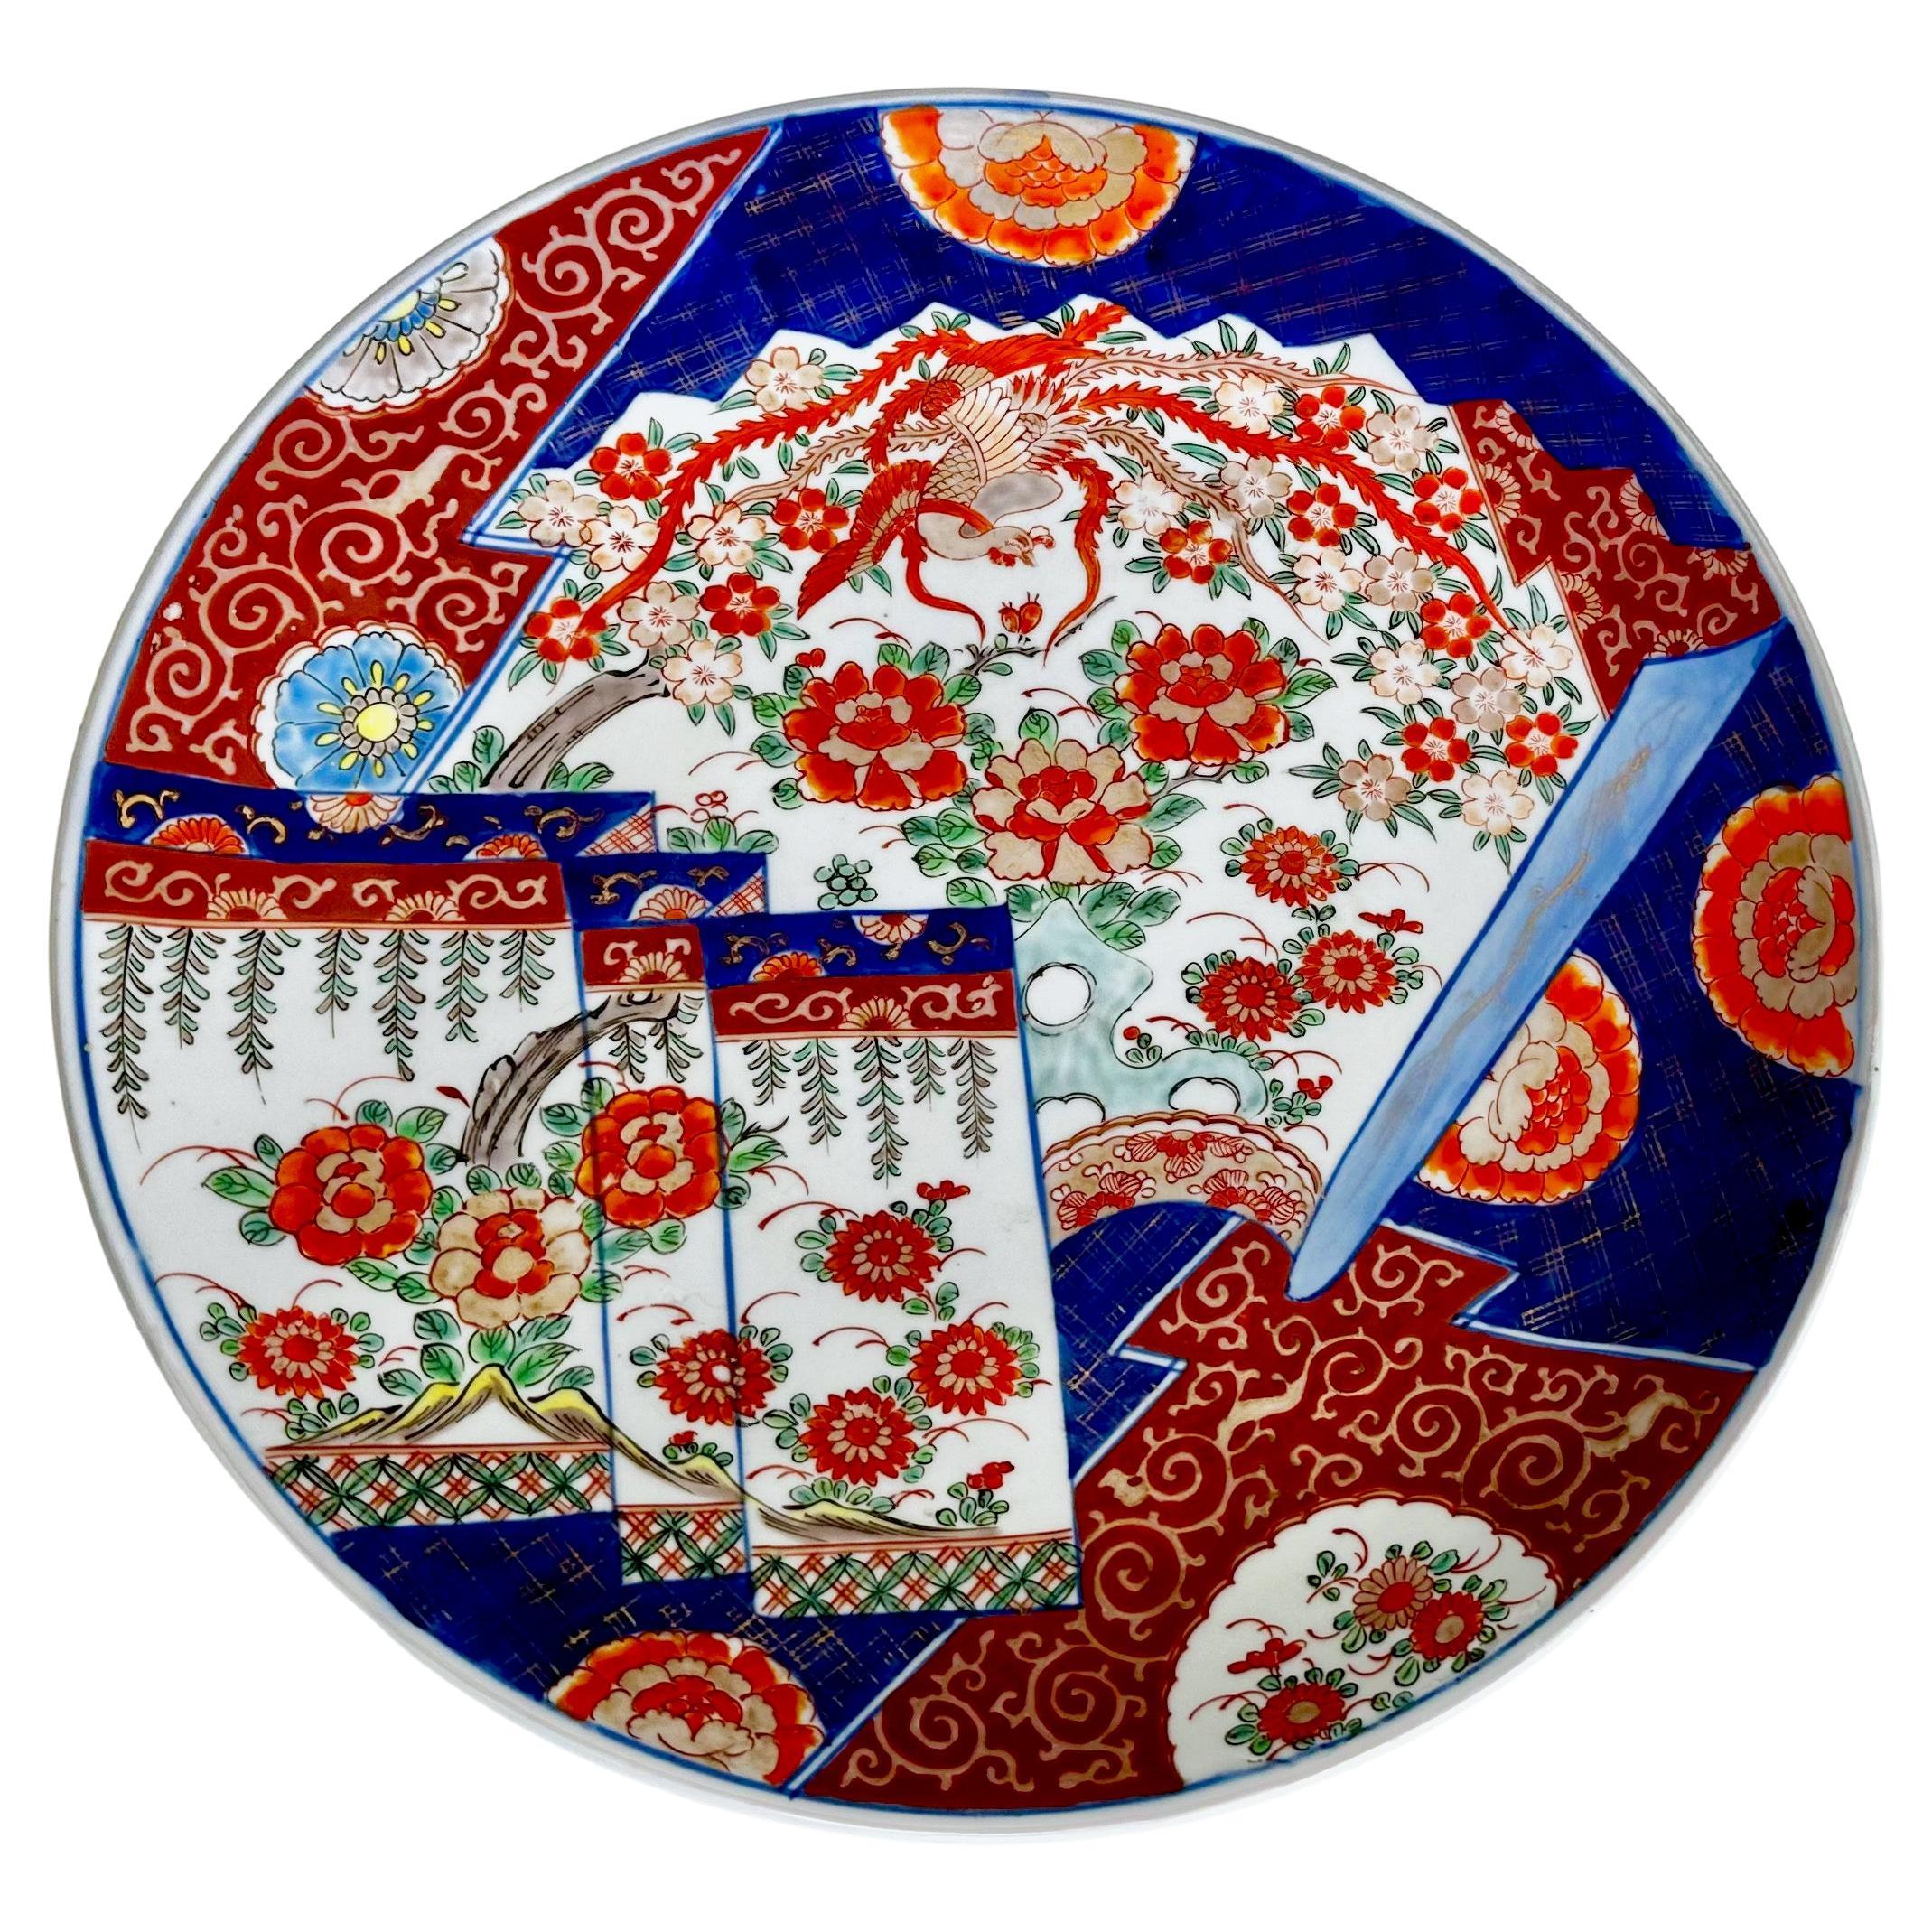 Grand chargeur japonais en porcelaine Imari Porcelain